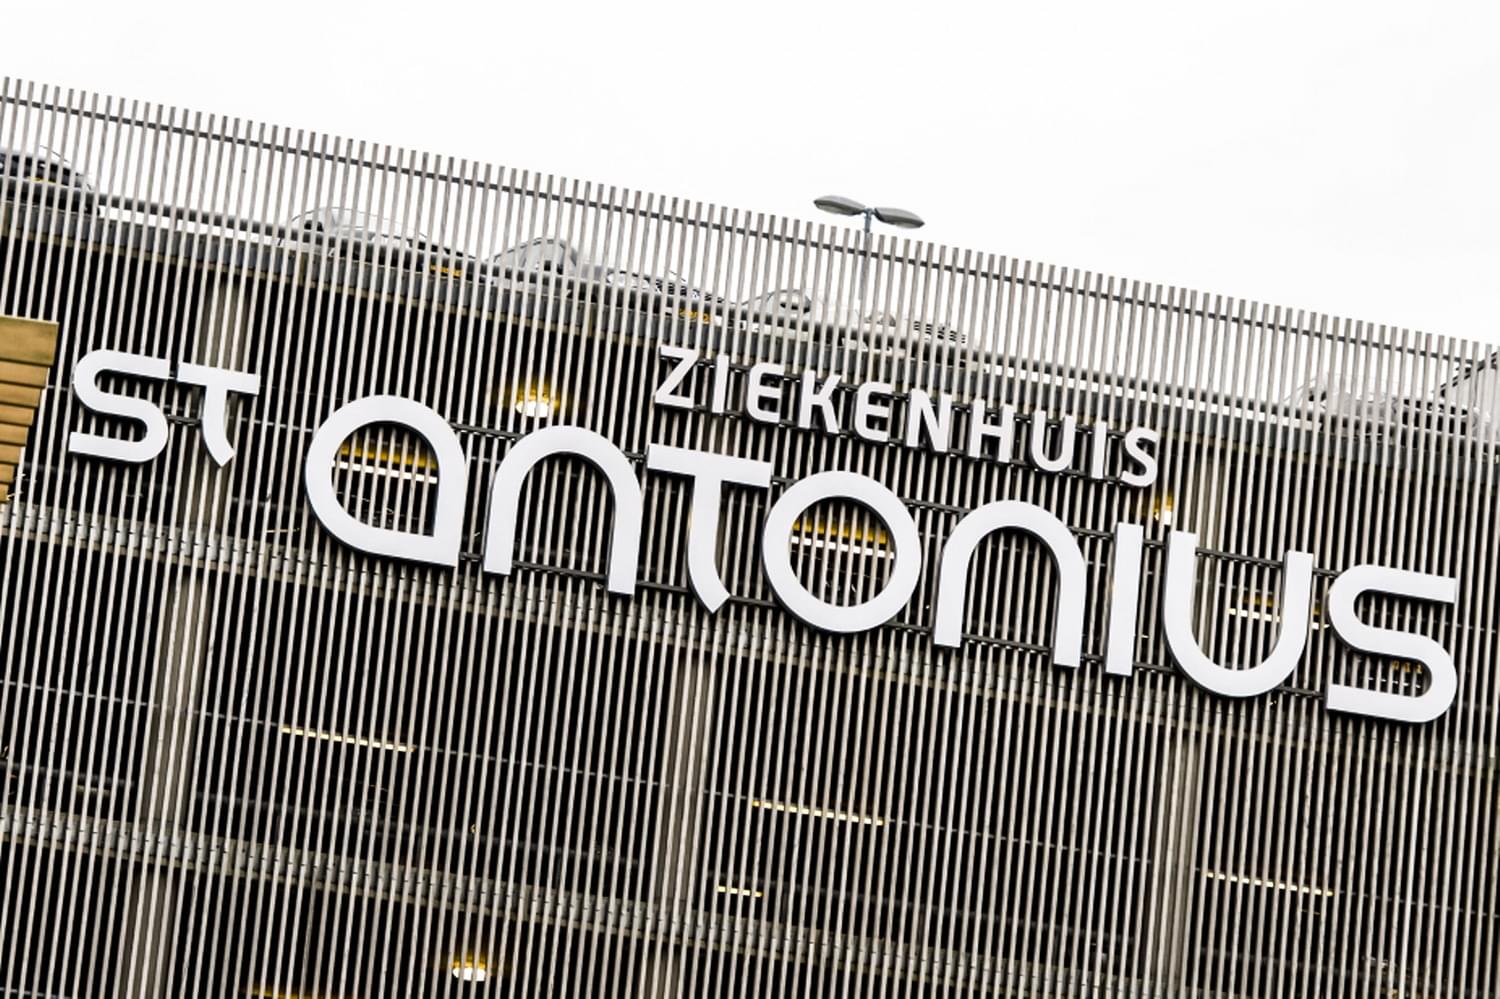 St._Antonius_Ziekenhuis - ICT&health | Official platform for healthcare ...